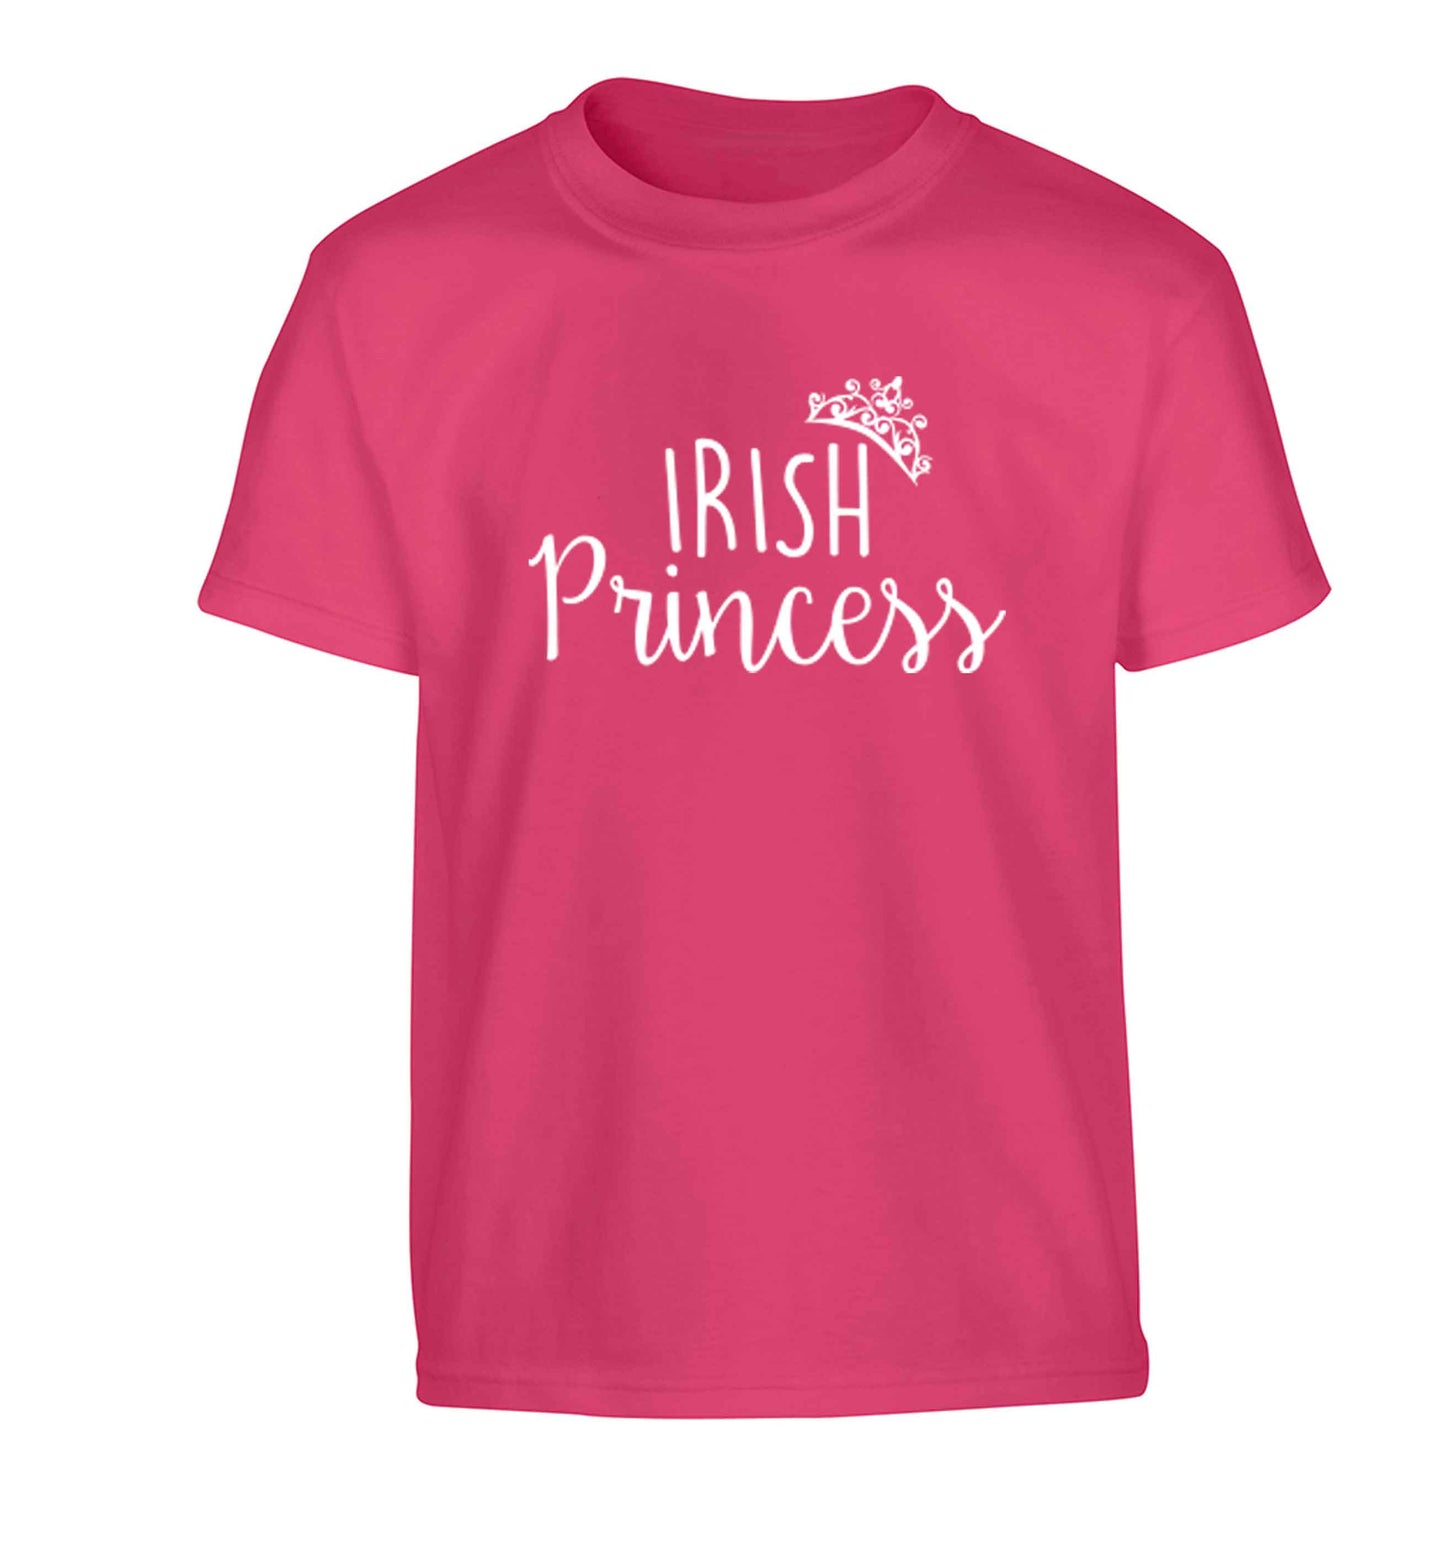 Irish princess Children's pink Tshirt 12-13 Years